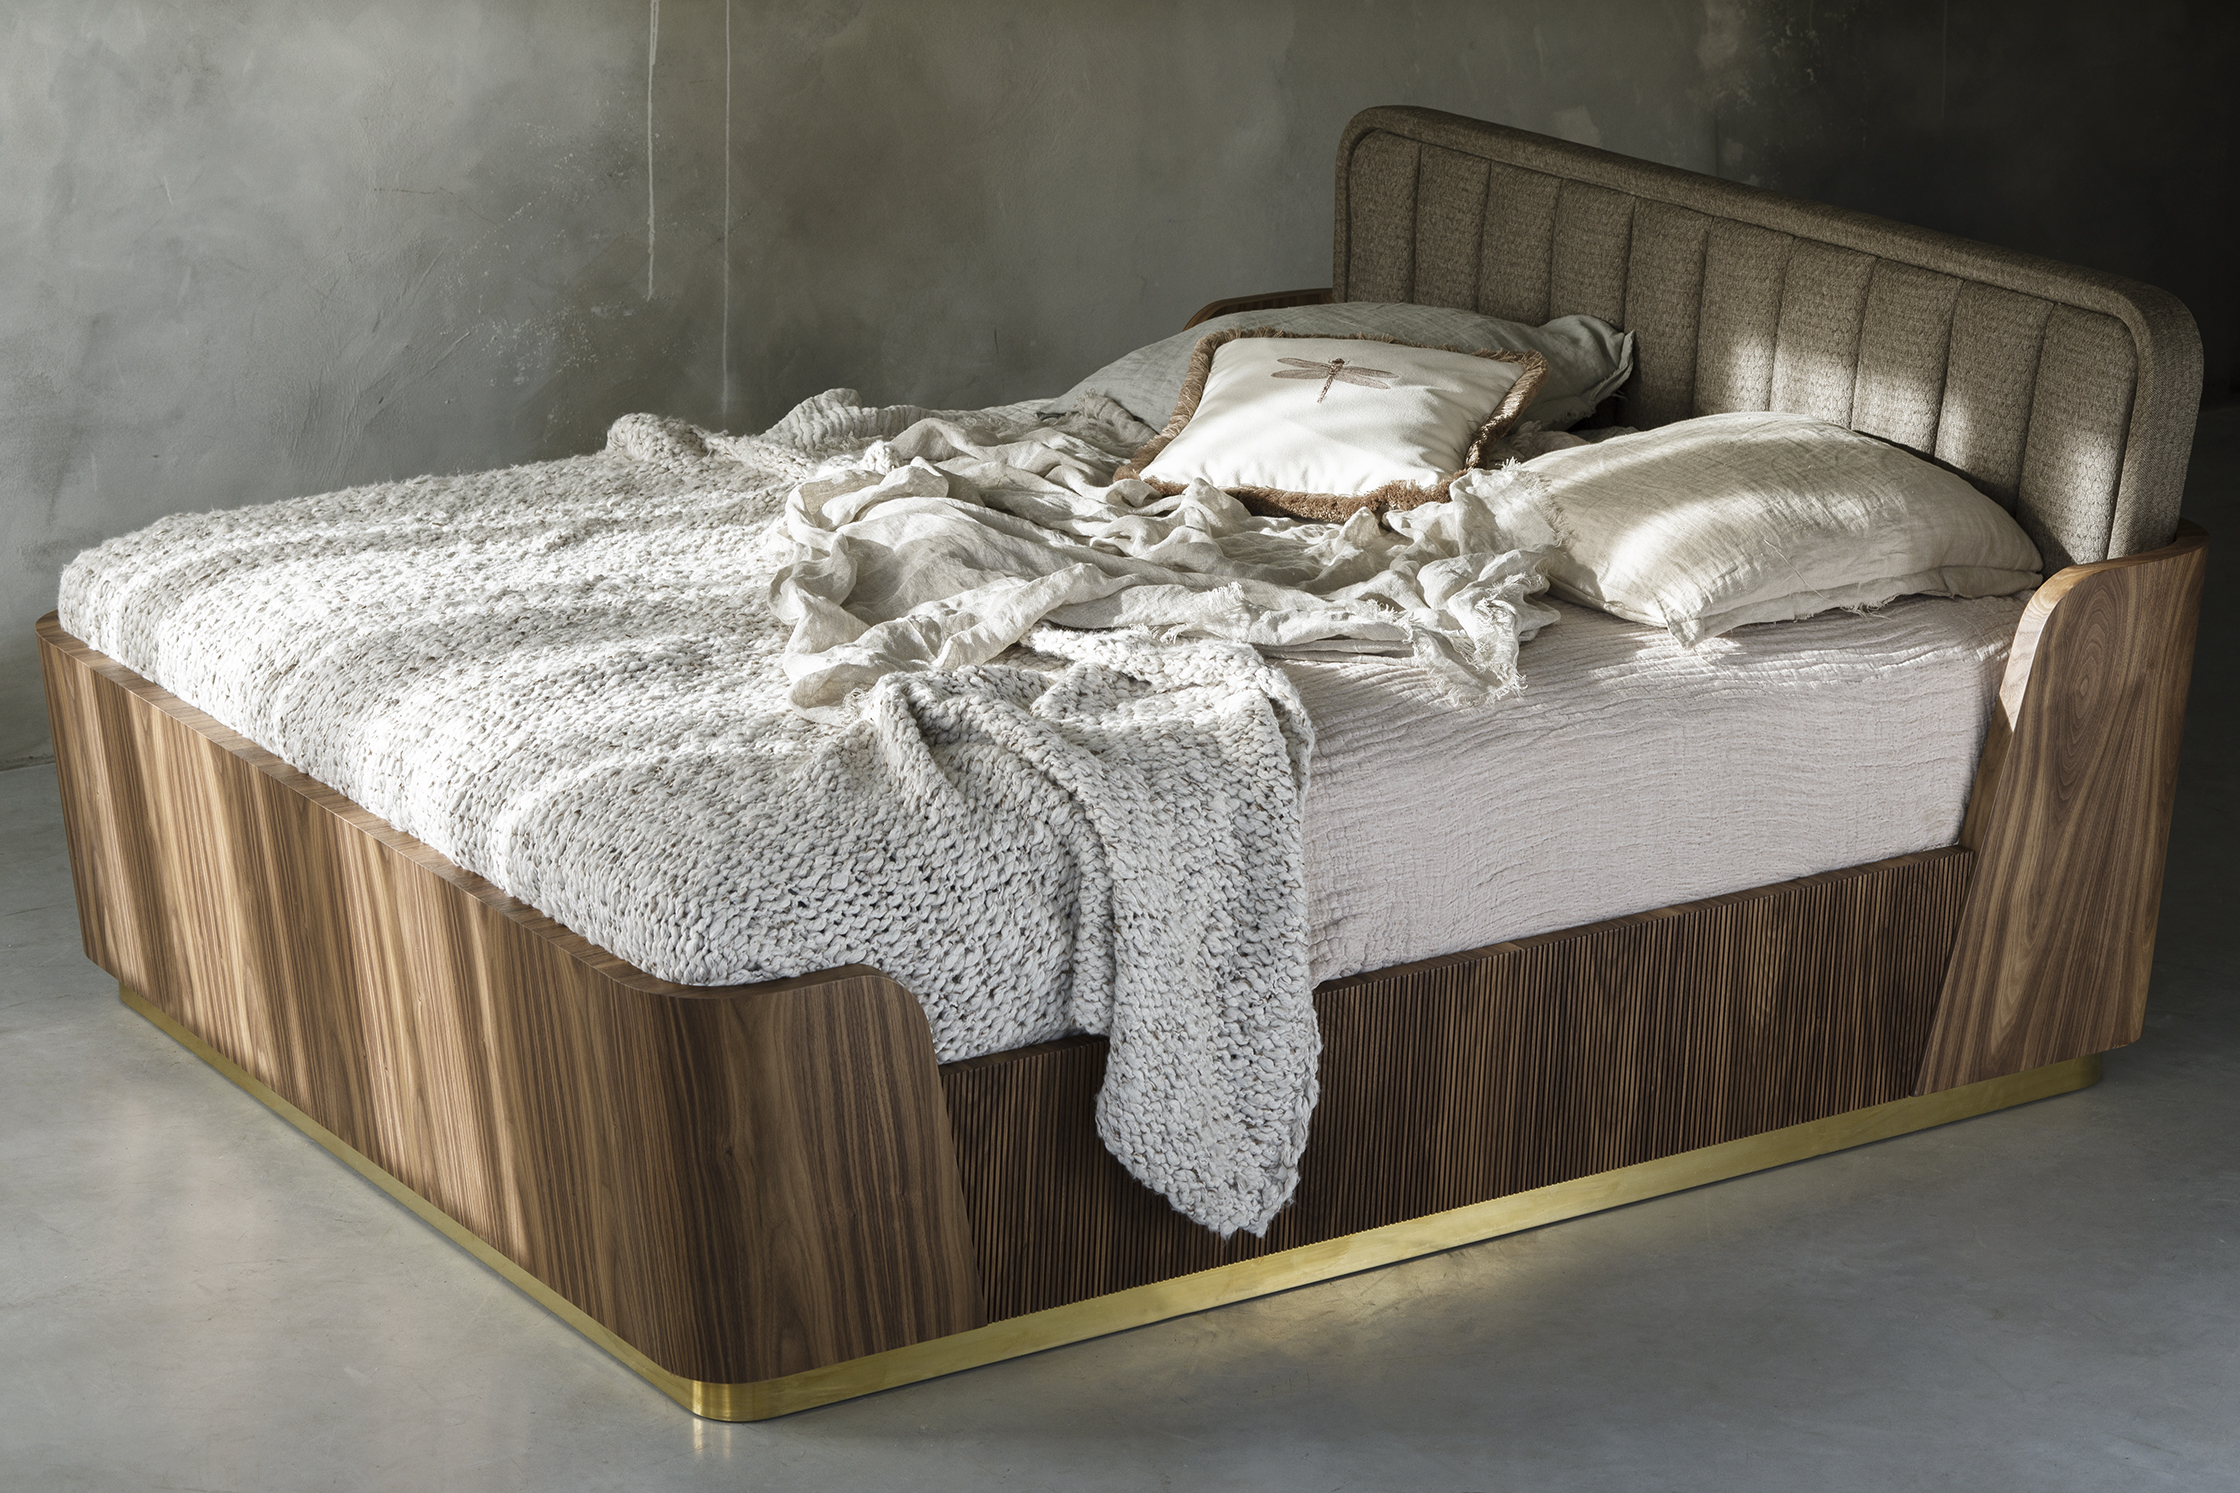 Łóżko Noctua zaprojektowane przez archtekta Rolanda Stańczyka.